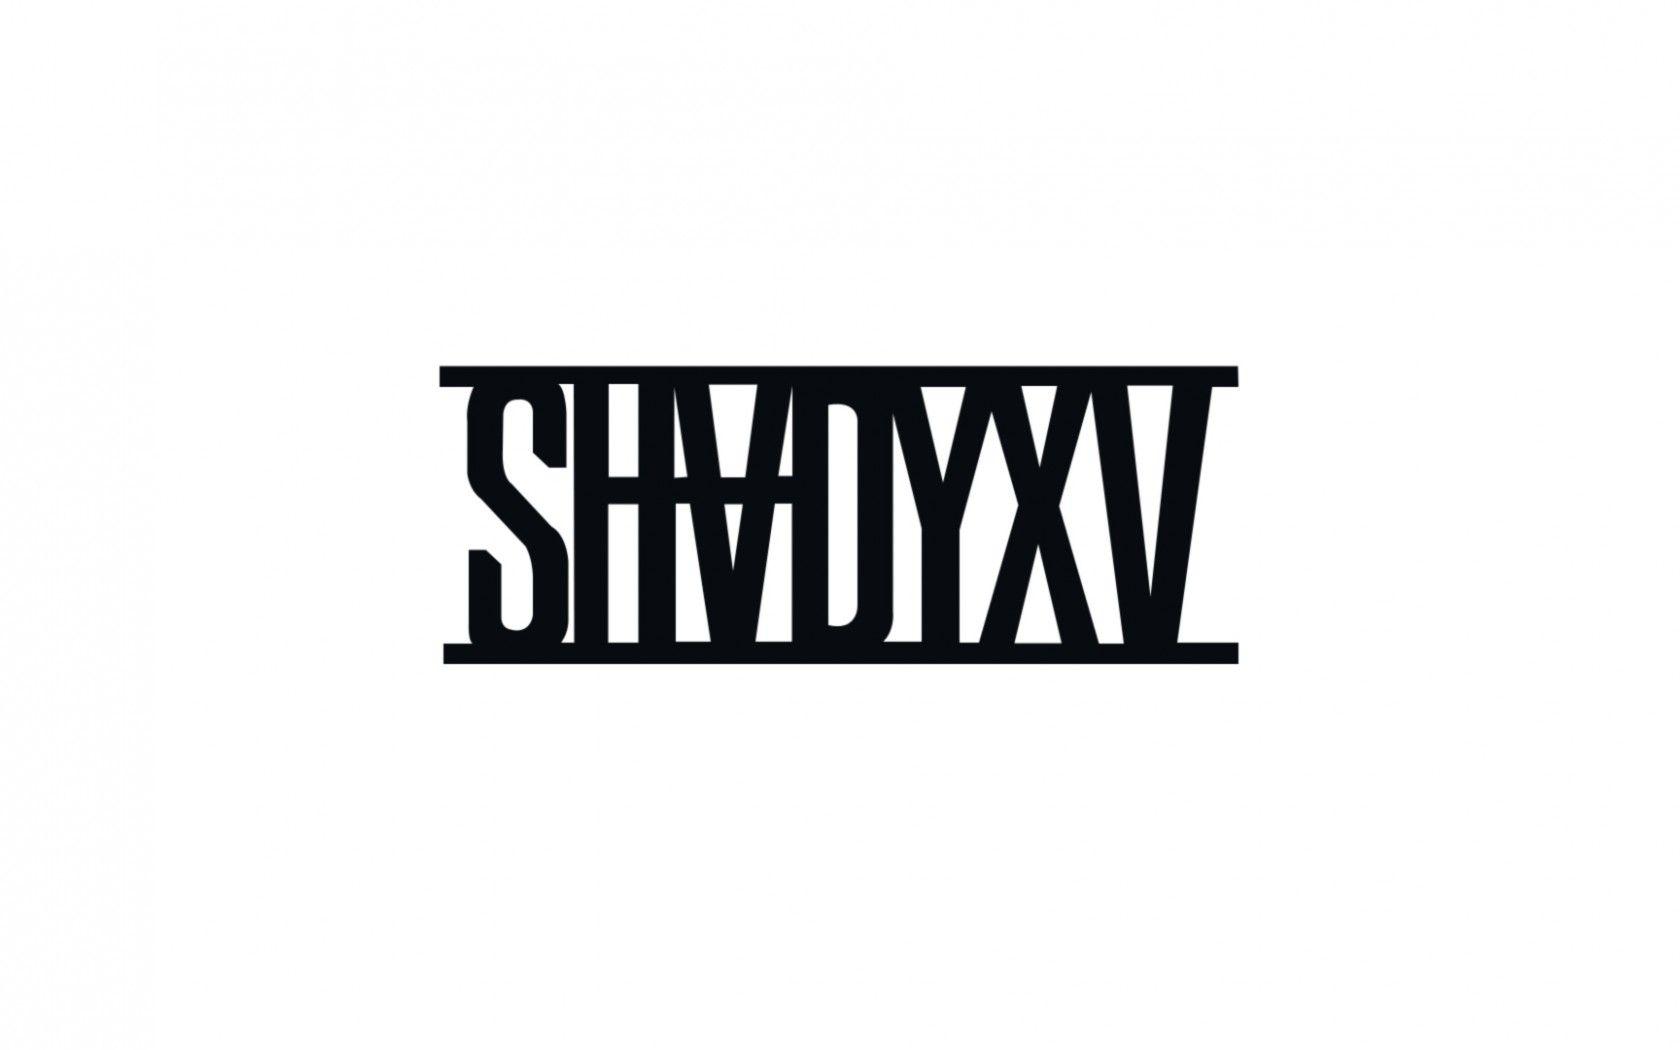 Shady Logo - Wallpaper : T shirt, text, logo, brand, Eminem, shadyxv, Marshall ...